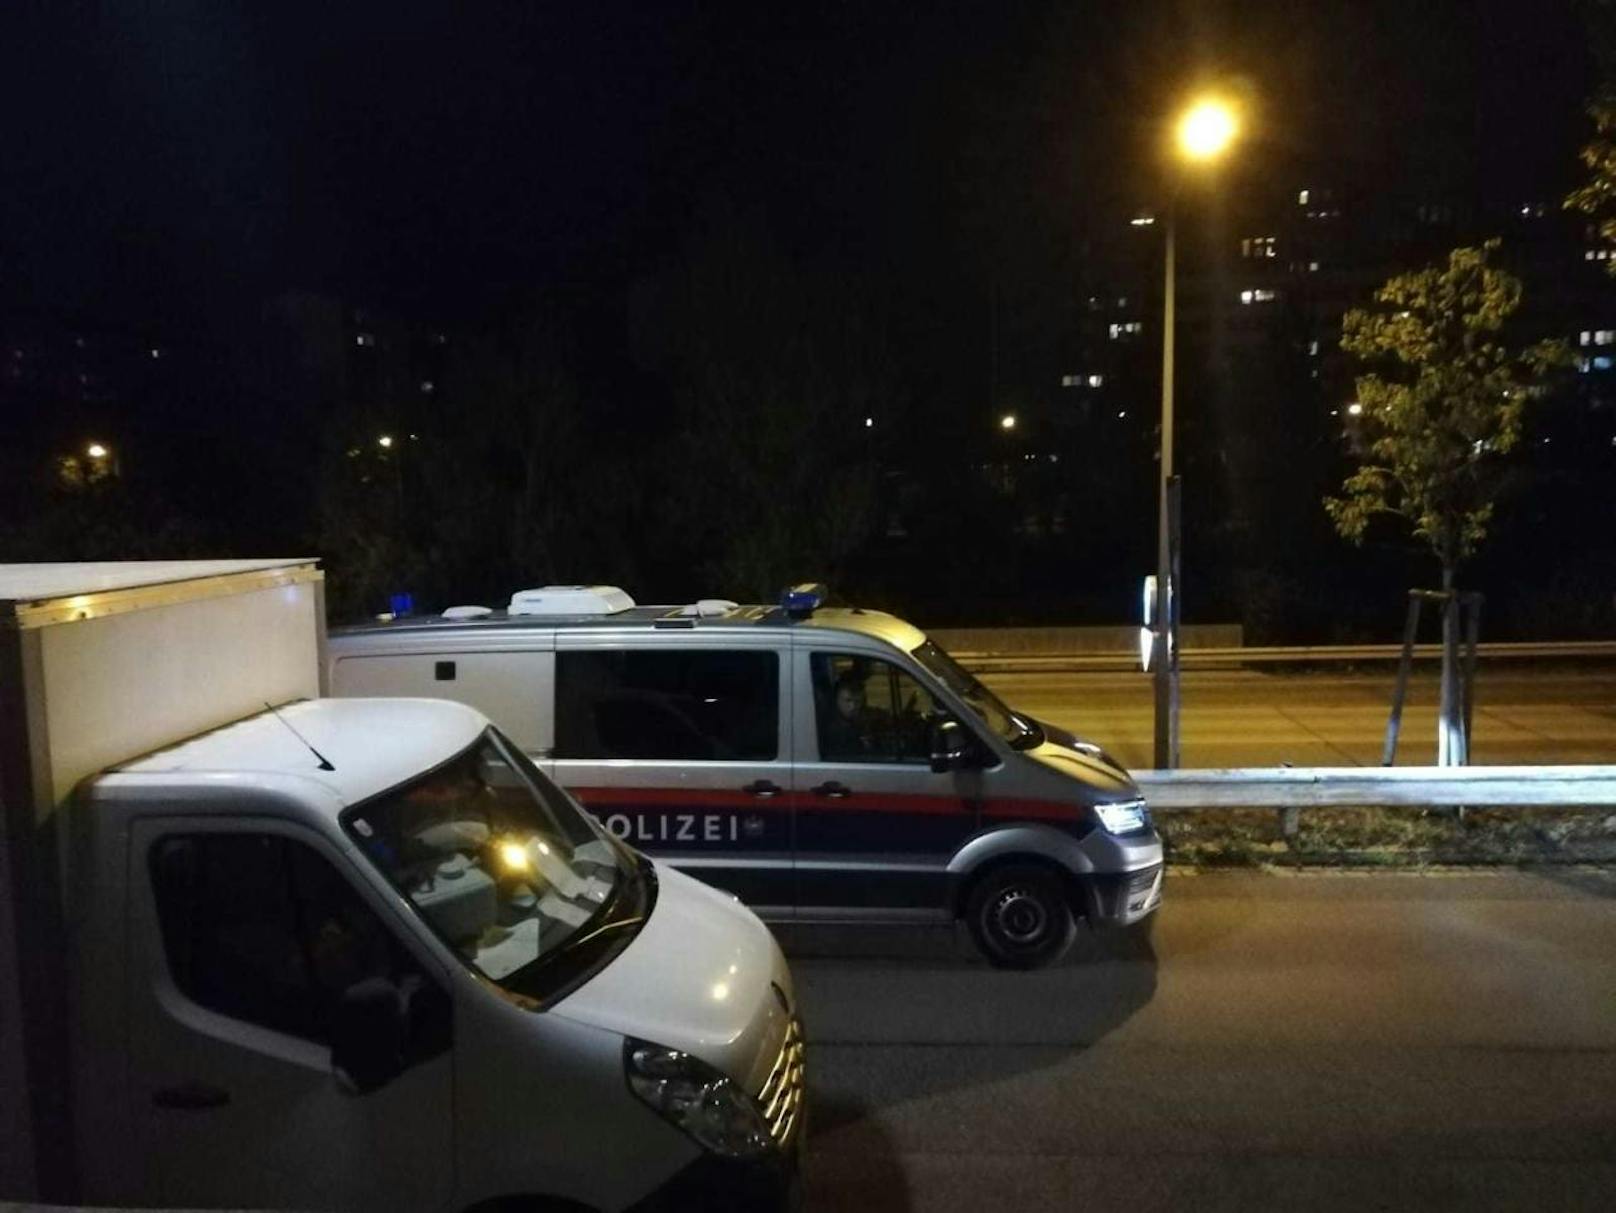 Polizei--Einsatz am Mittwochabend in Wien-Döbling.